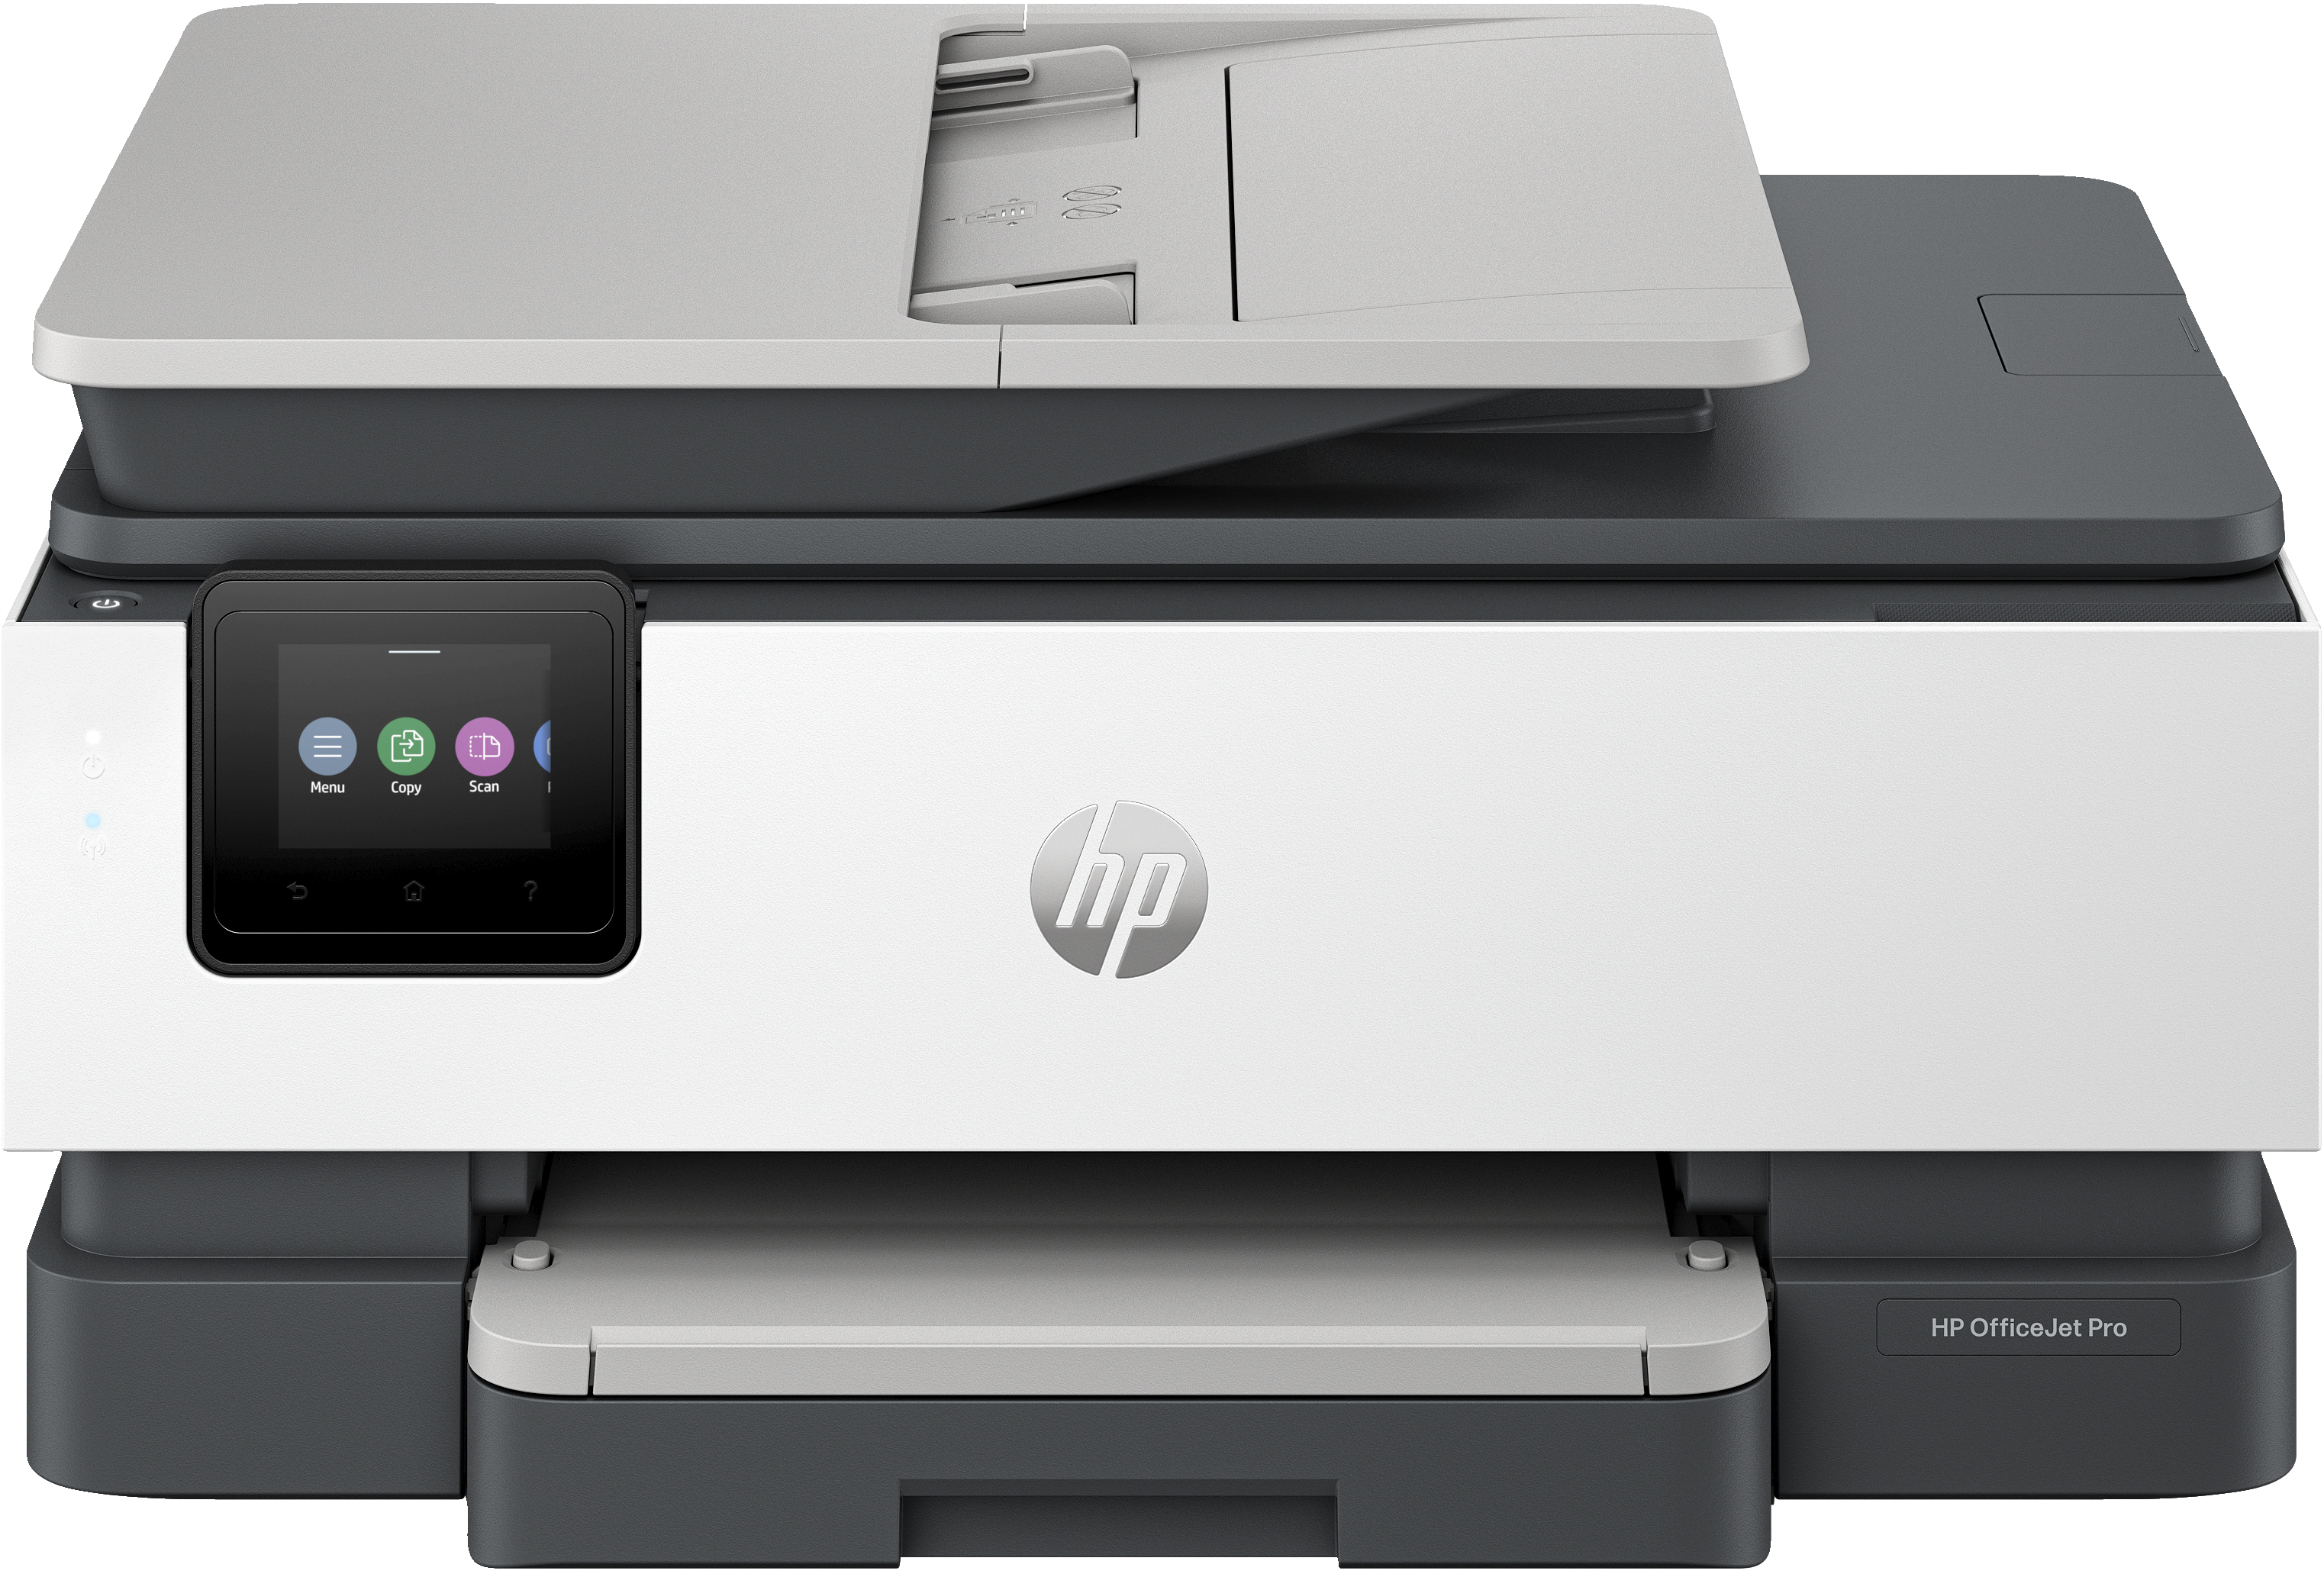 HP OfficeJet Pro Stampante multifunzione HP 8132e, Colore, Stampante per Casa, Stampa, copia, scansione, fax, idonea a HP Instant Ink; alimentatore automatico di documenti; touchscreen; Modalit silenziosa; Stampa tramite VPN con HP+